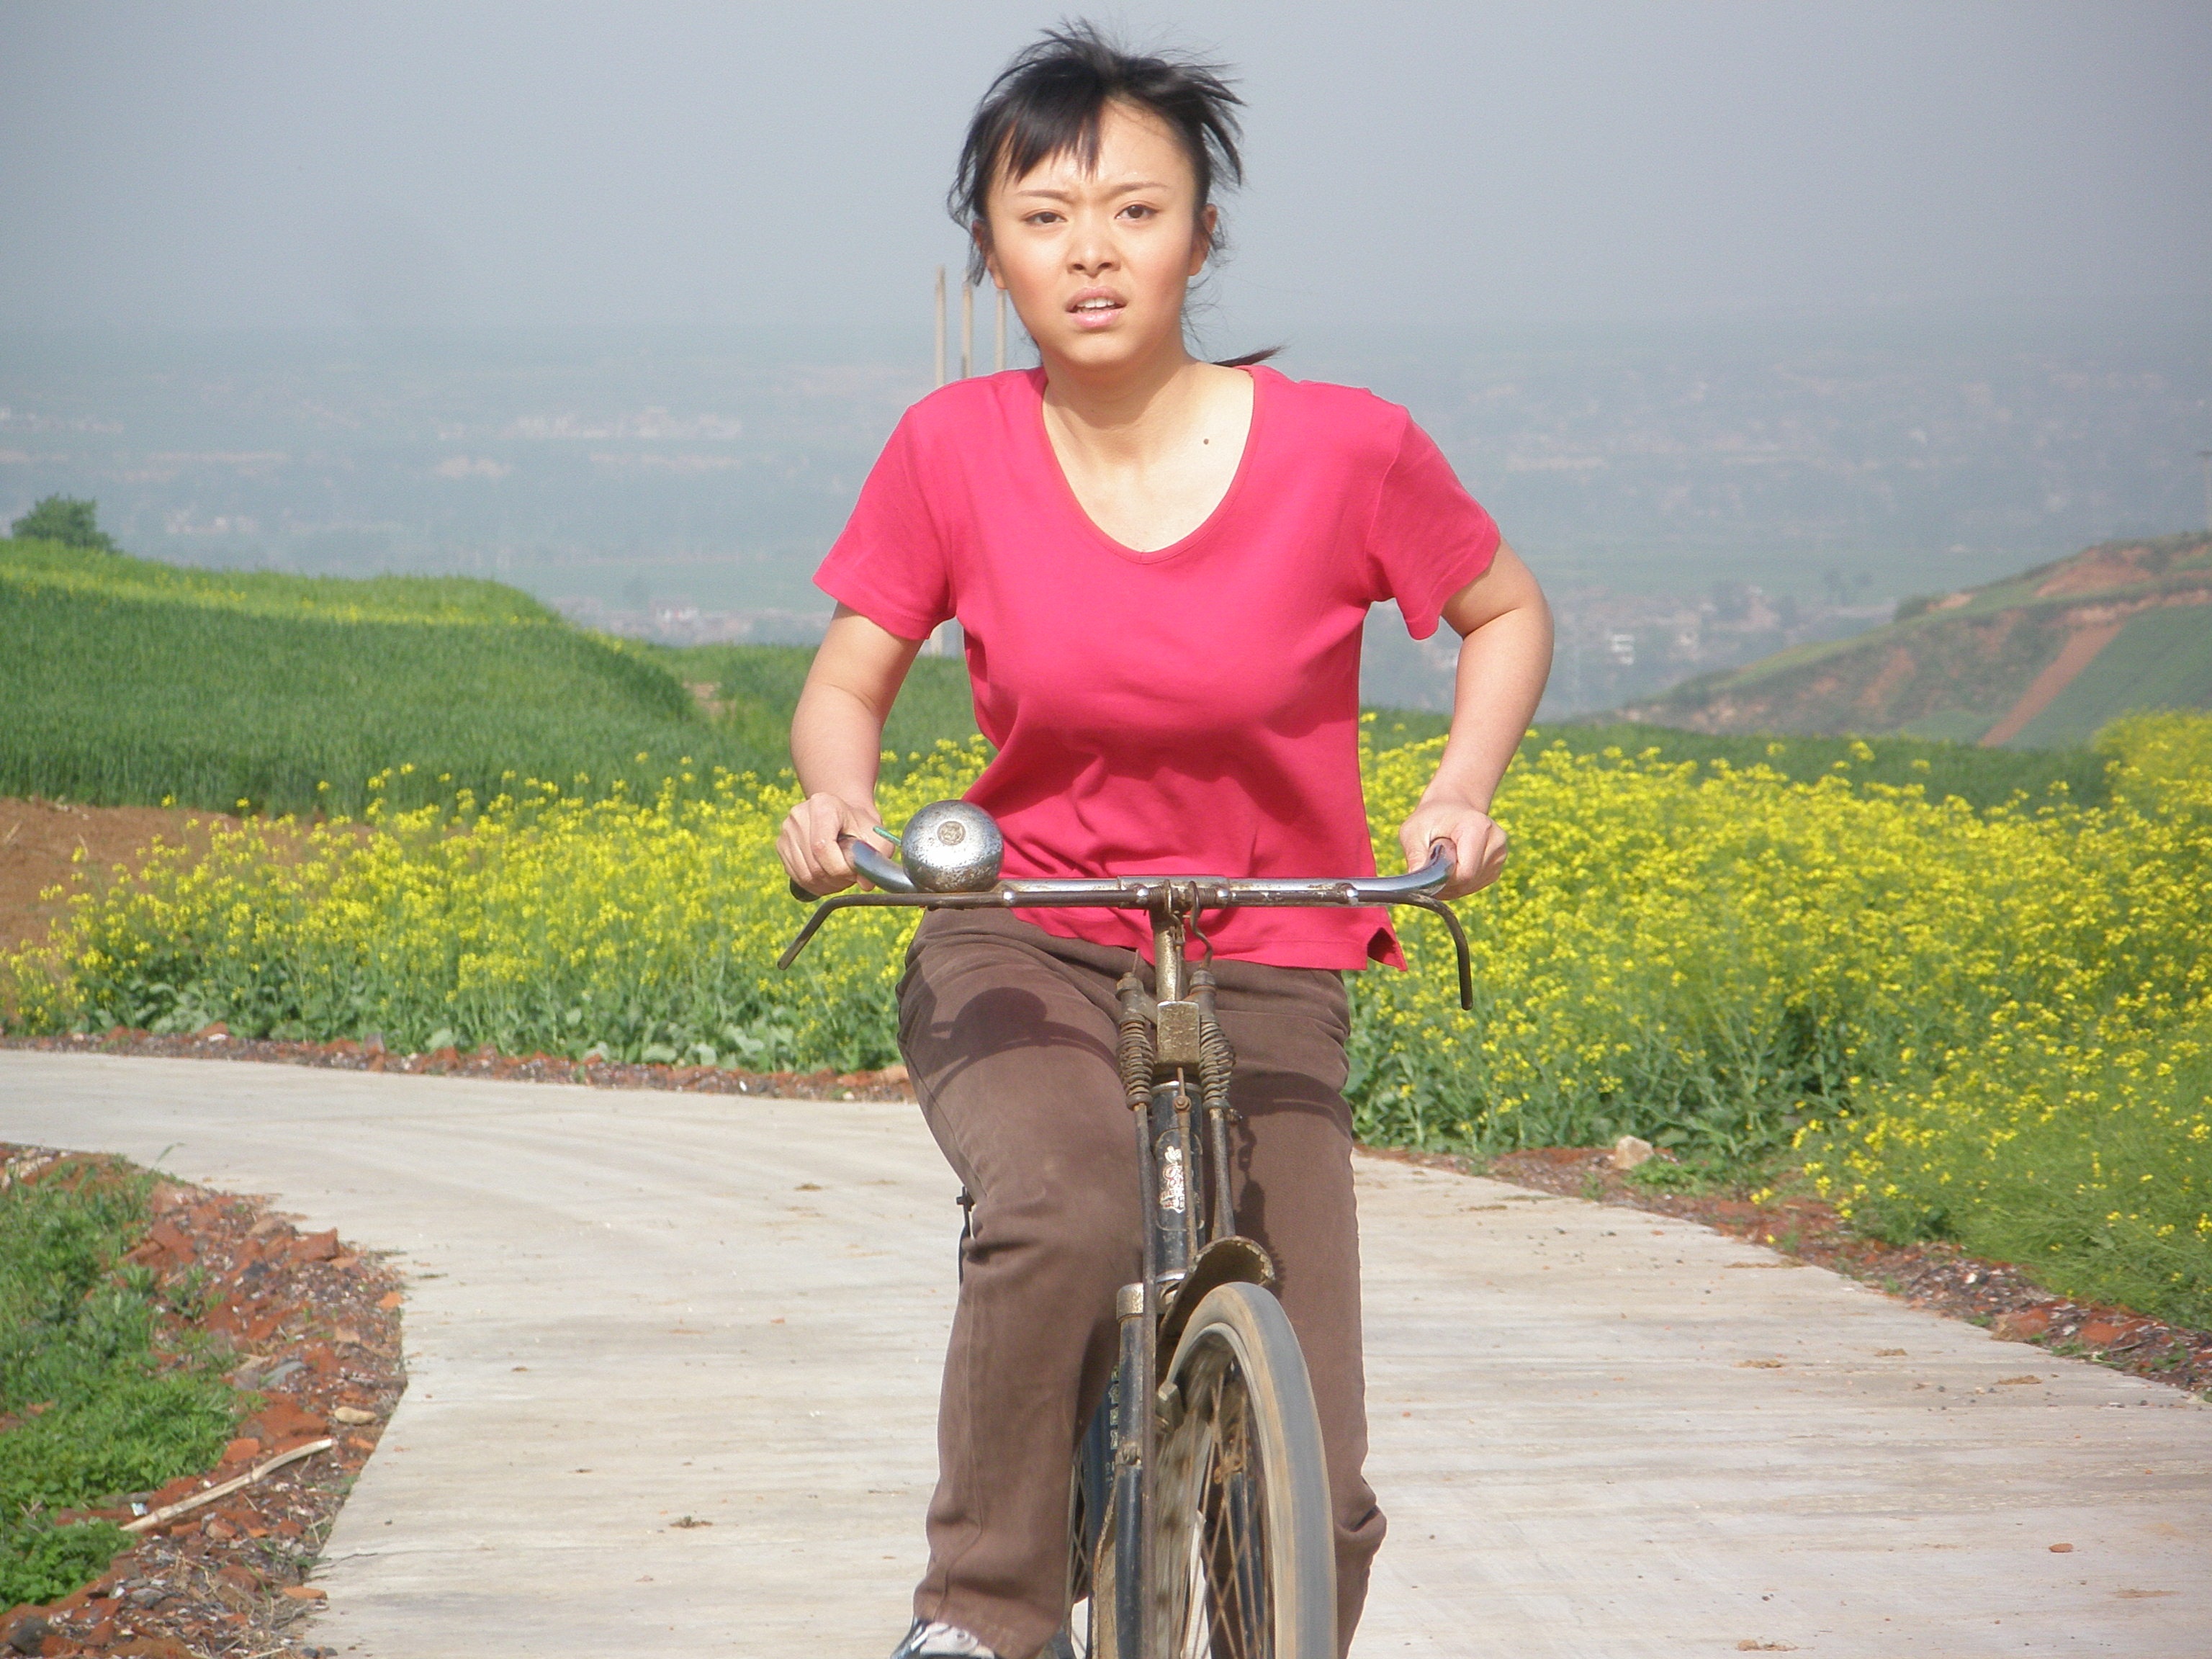 单车美女丨骑车和做菜都要100分努力的Michelle|单车美女 - 美骑网|Biketo.com